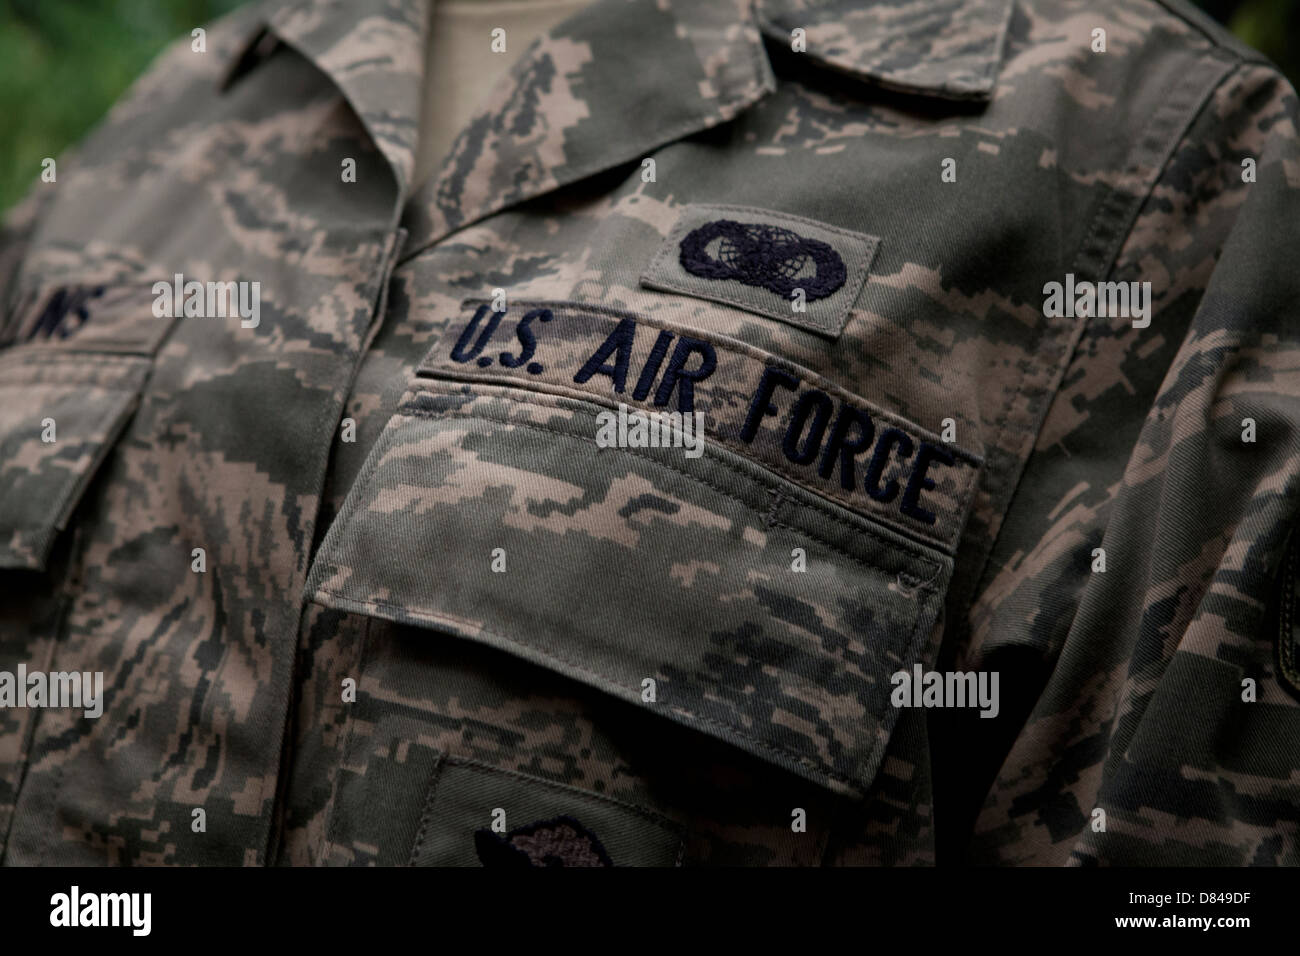 US Air Force airman battle uniform Foto de stock